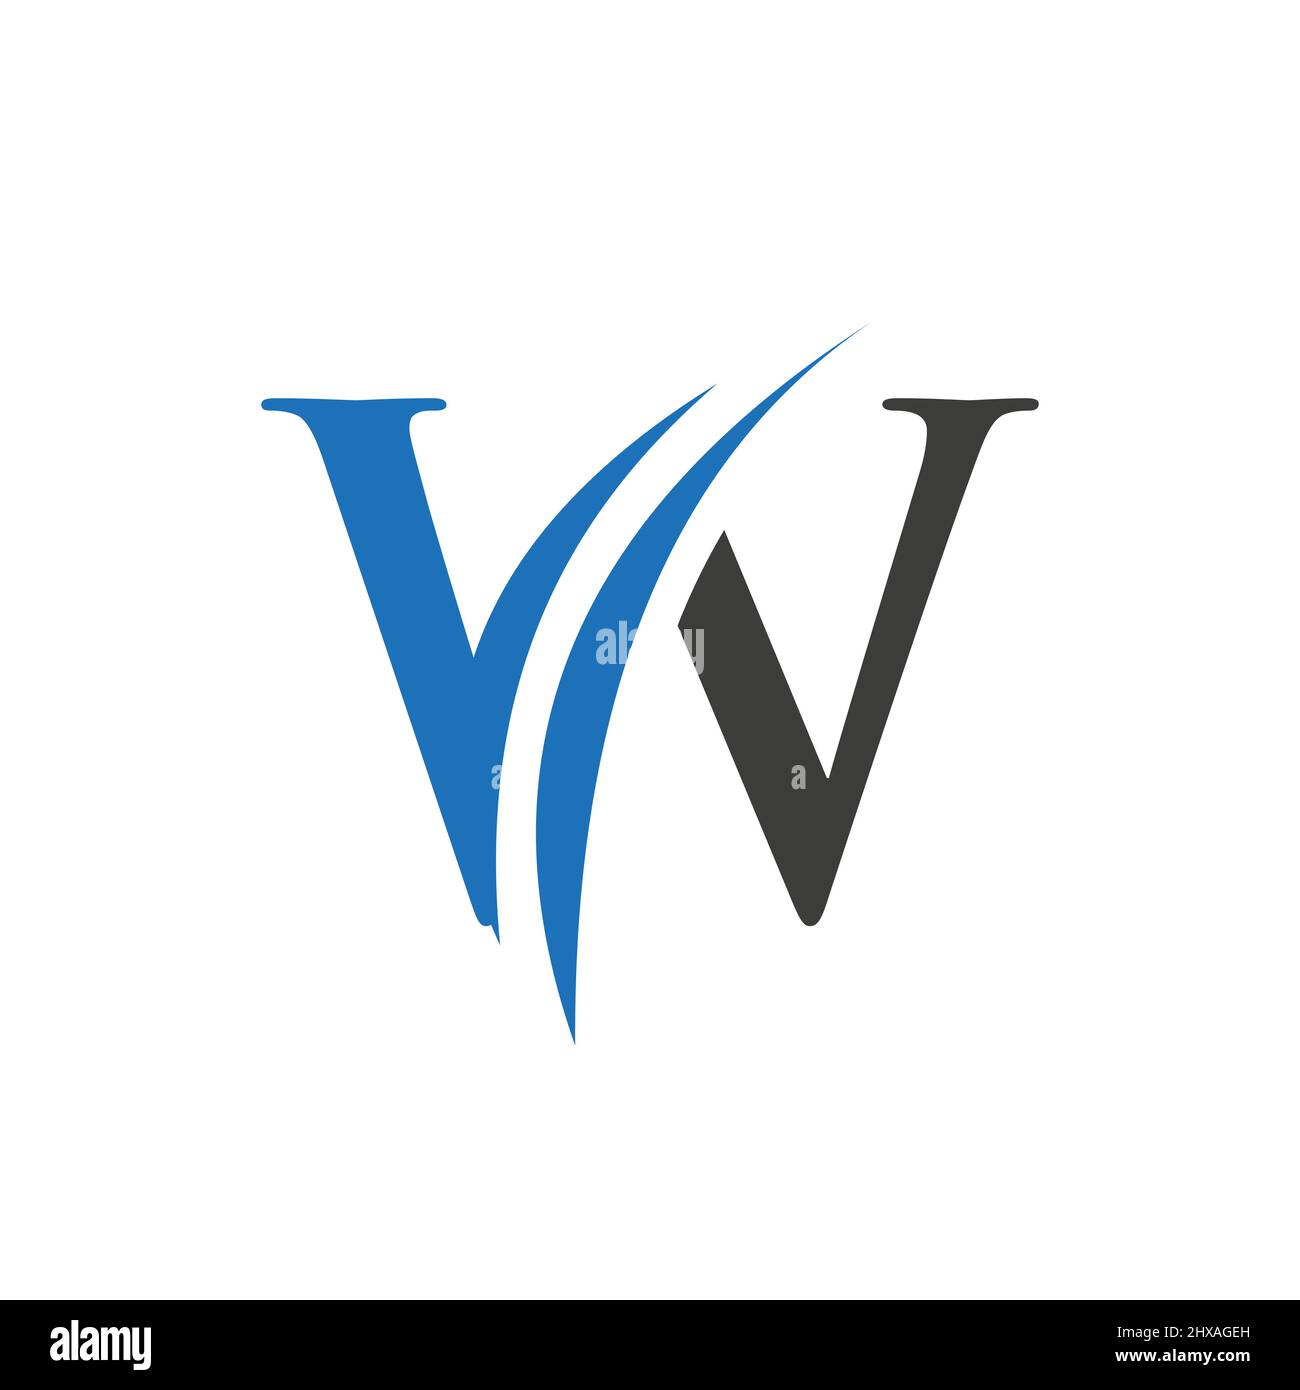 Ursprüngliches Design des Logos im W-Buchstaben-Alphabet im Vektorformat. Abbildung mit dem W-Logo Stock Vektor